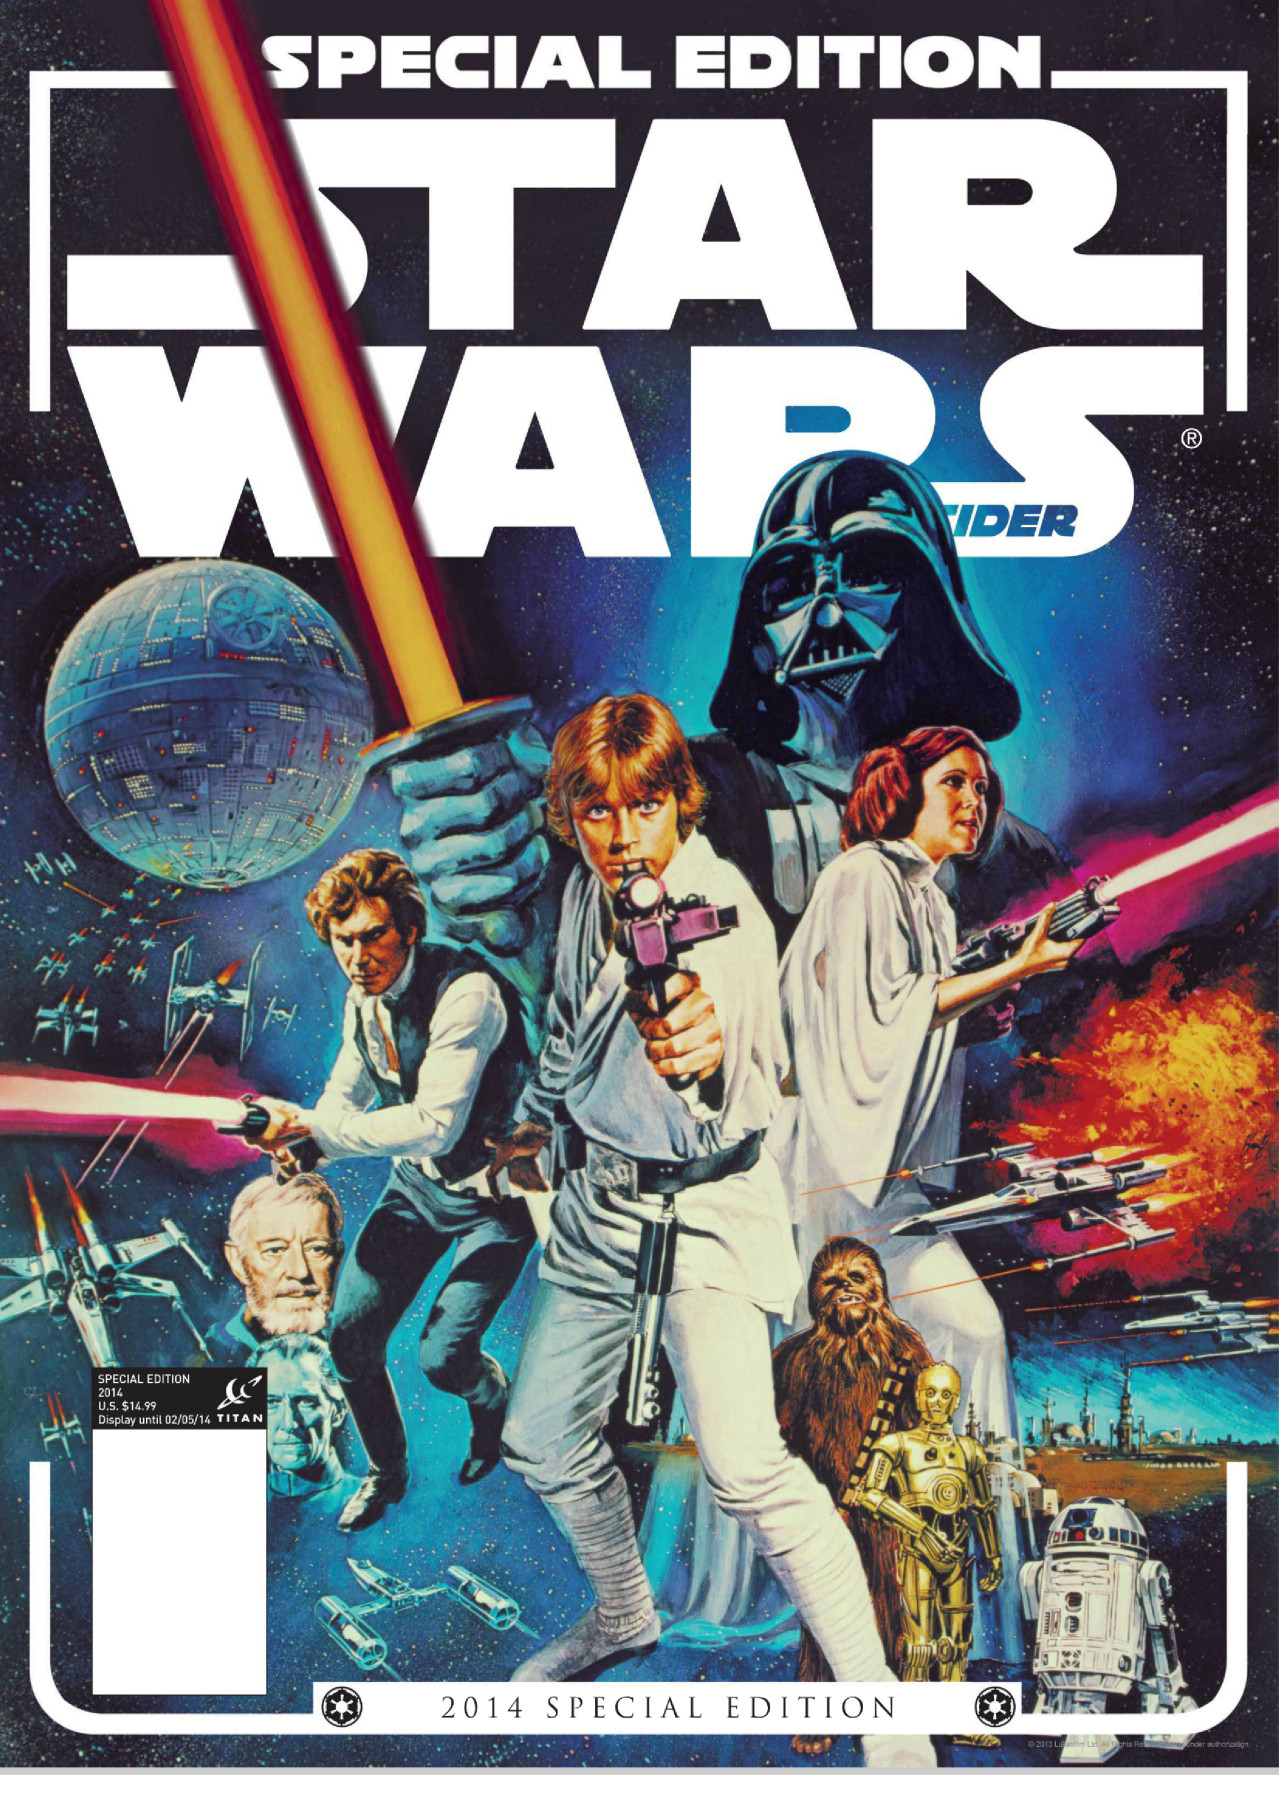 Star Wars Insider Special Edition